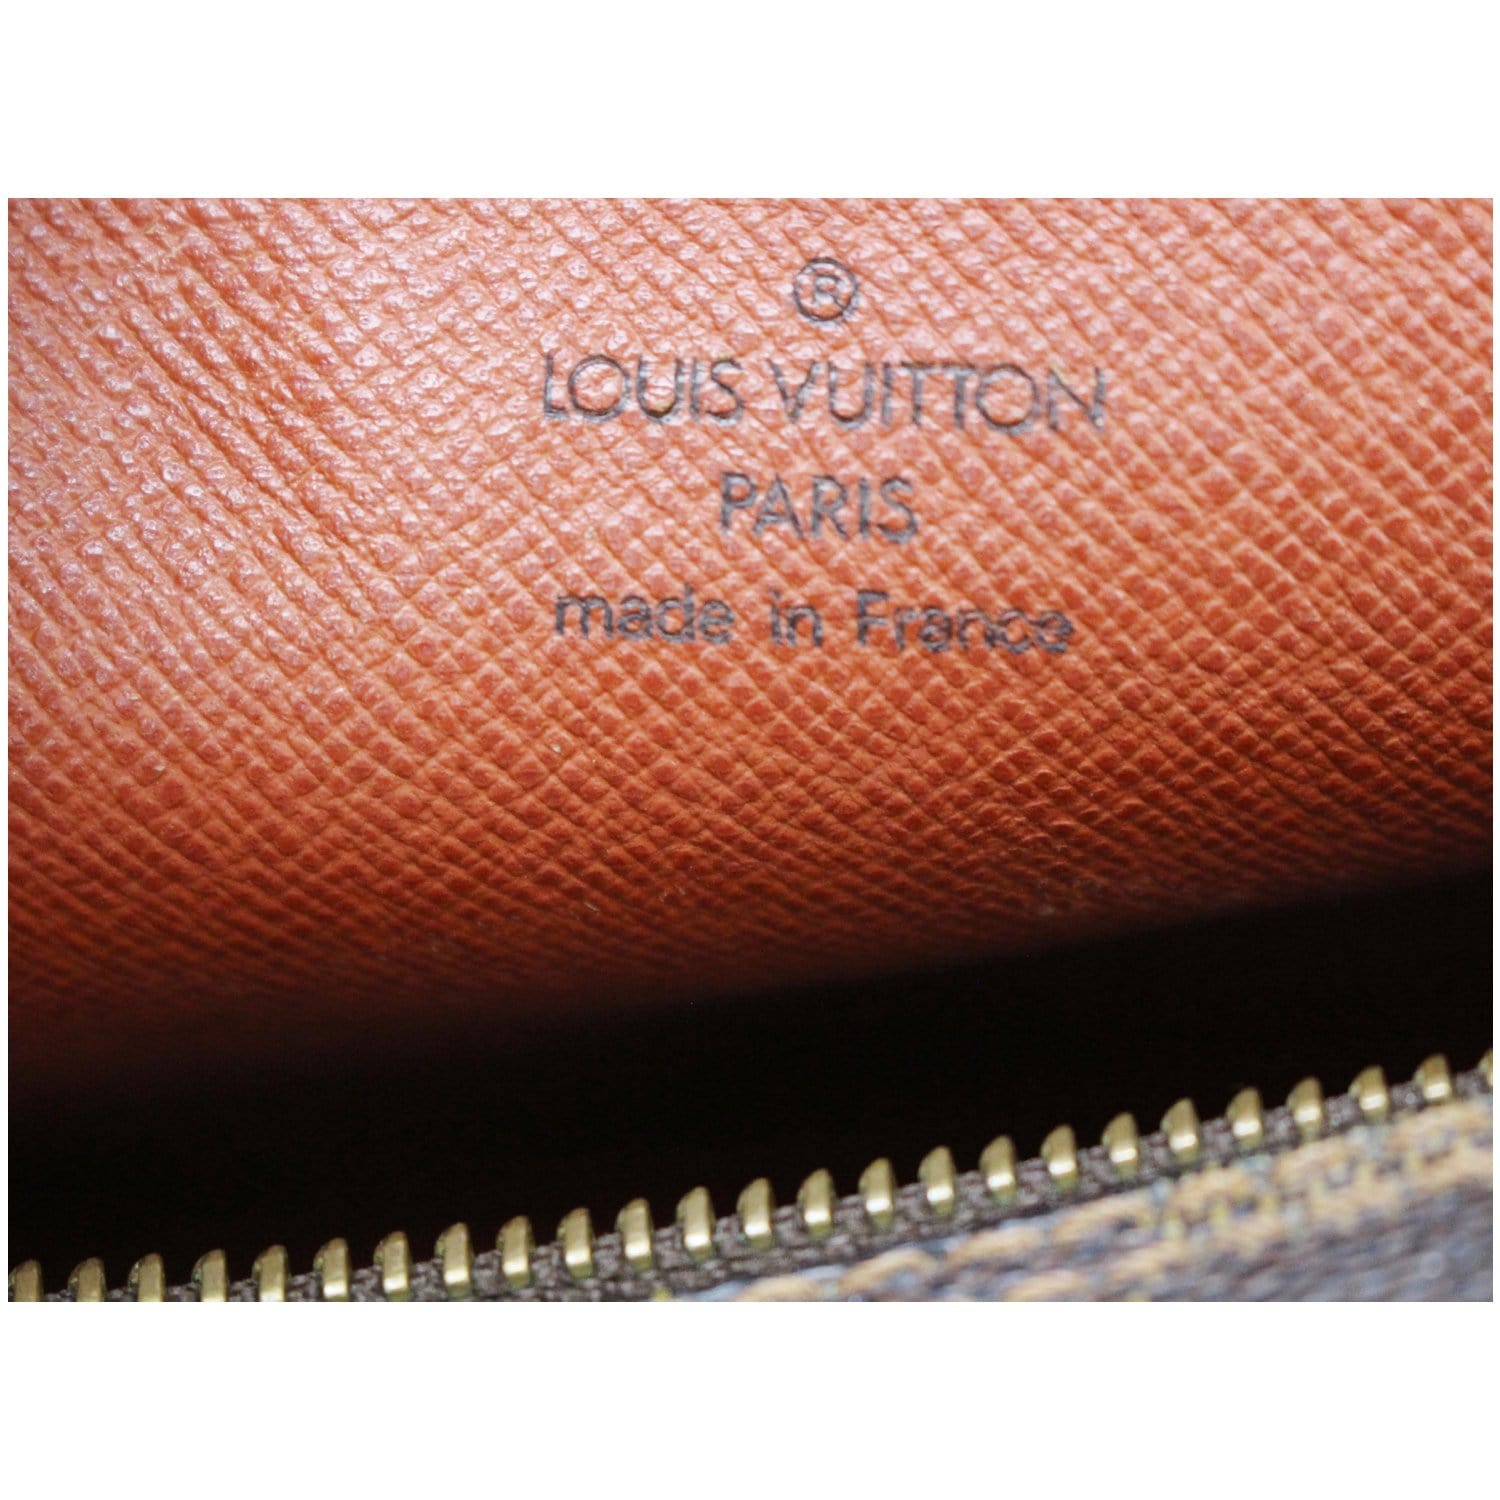 Louis Vuitton Papillon 30 Damier Ebene Barrel Brown Coated Canvas Shou –